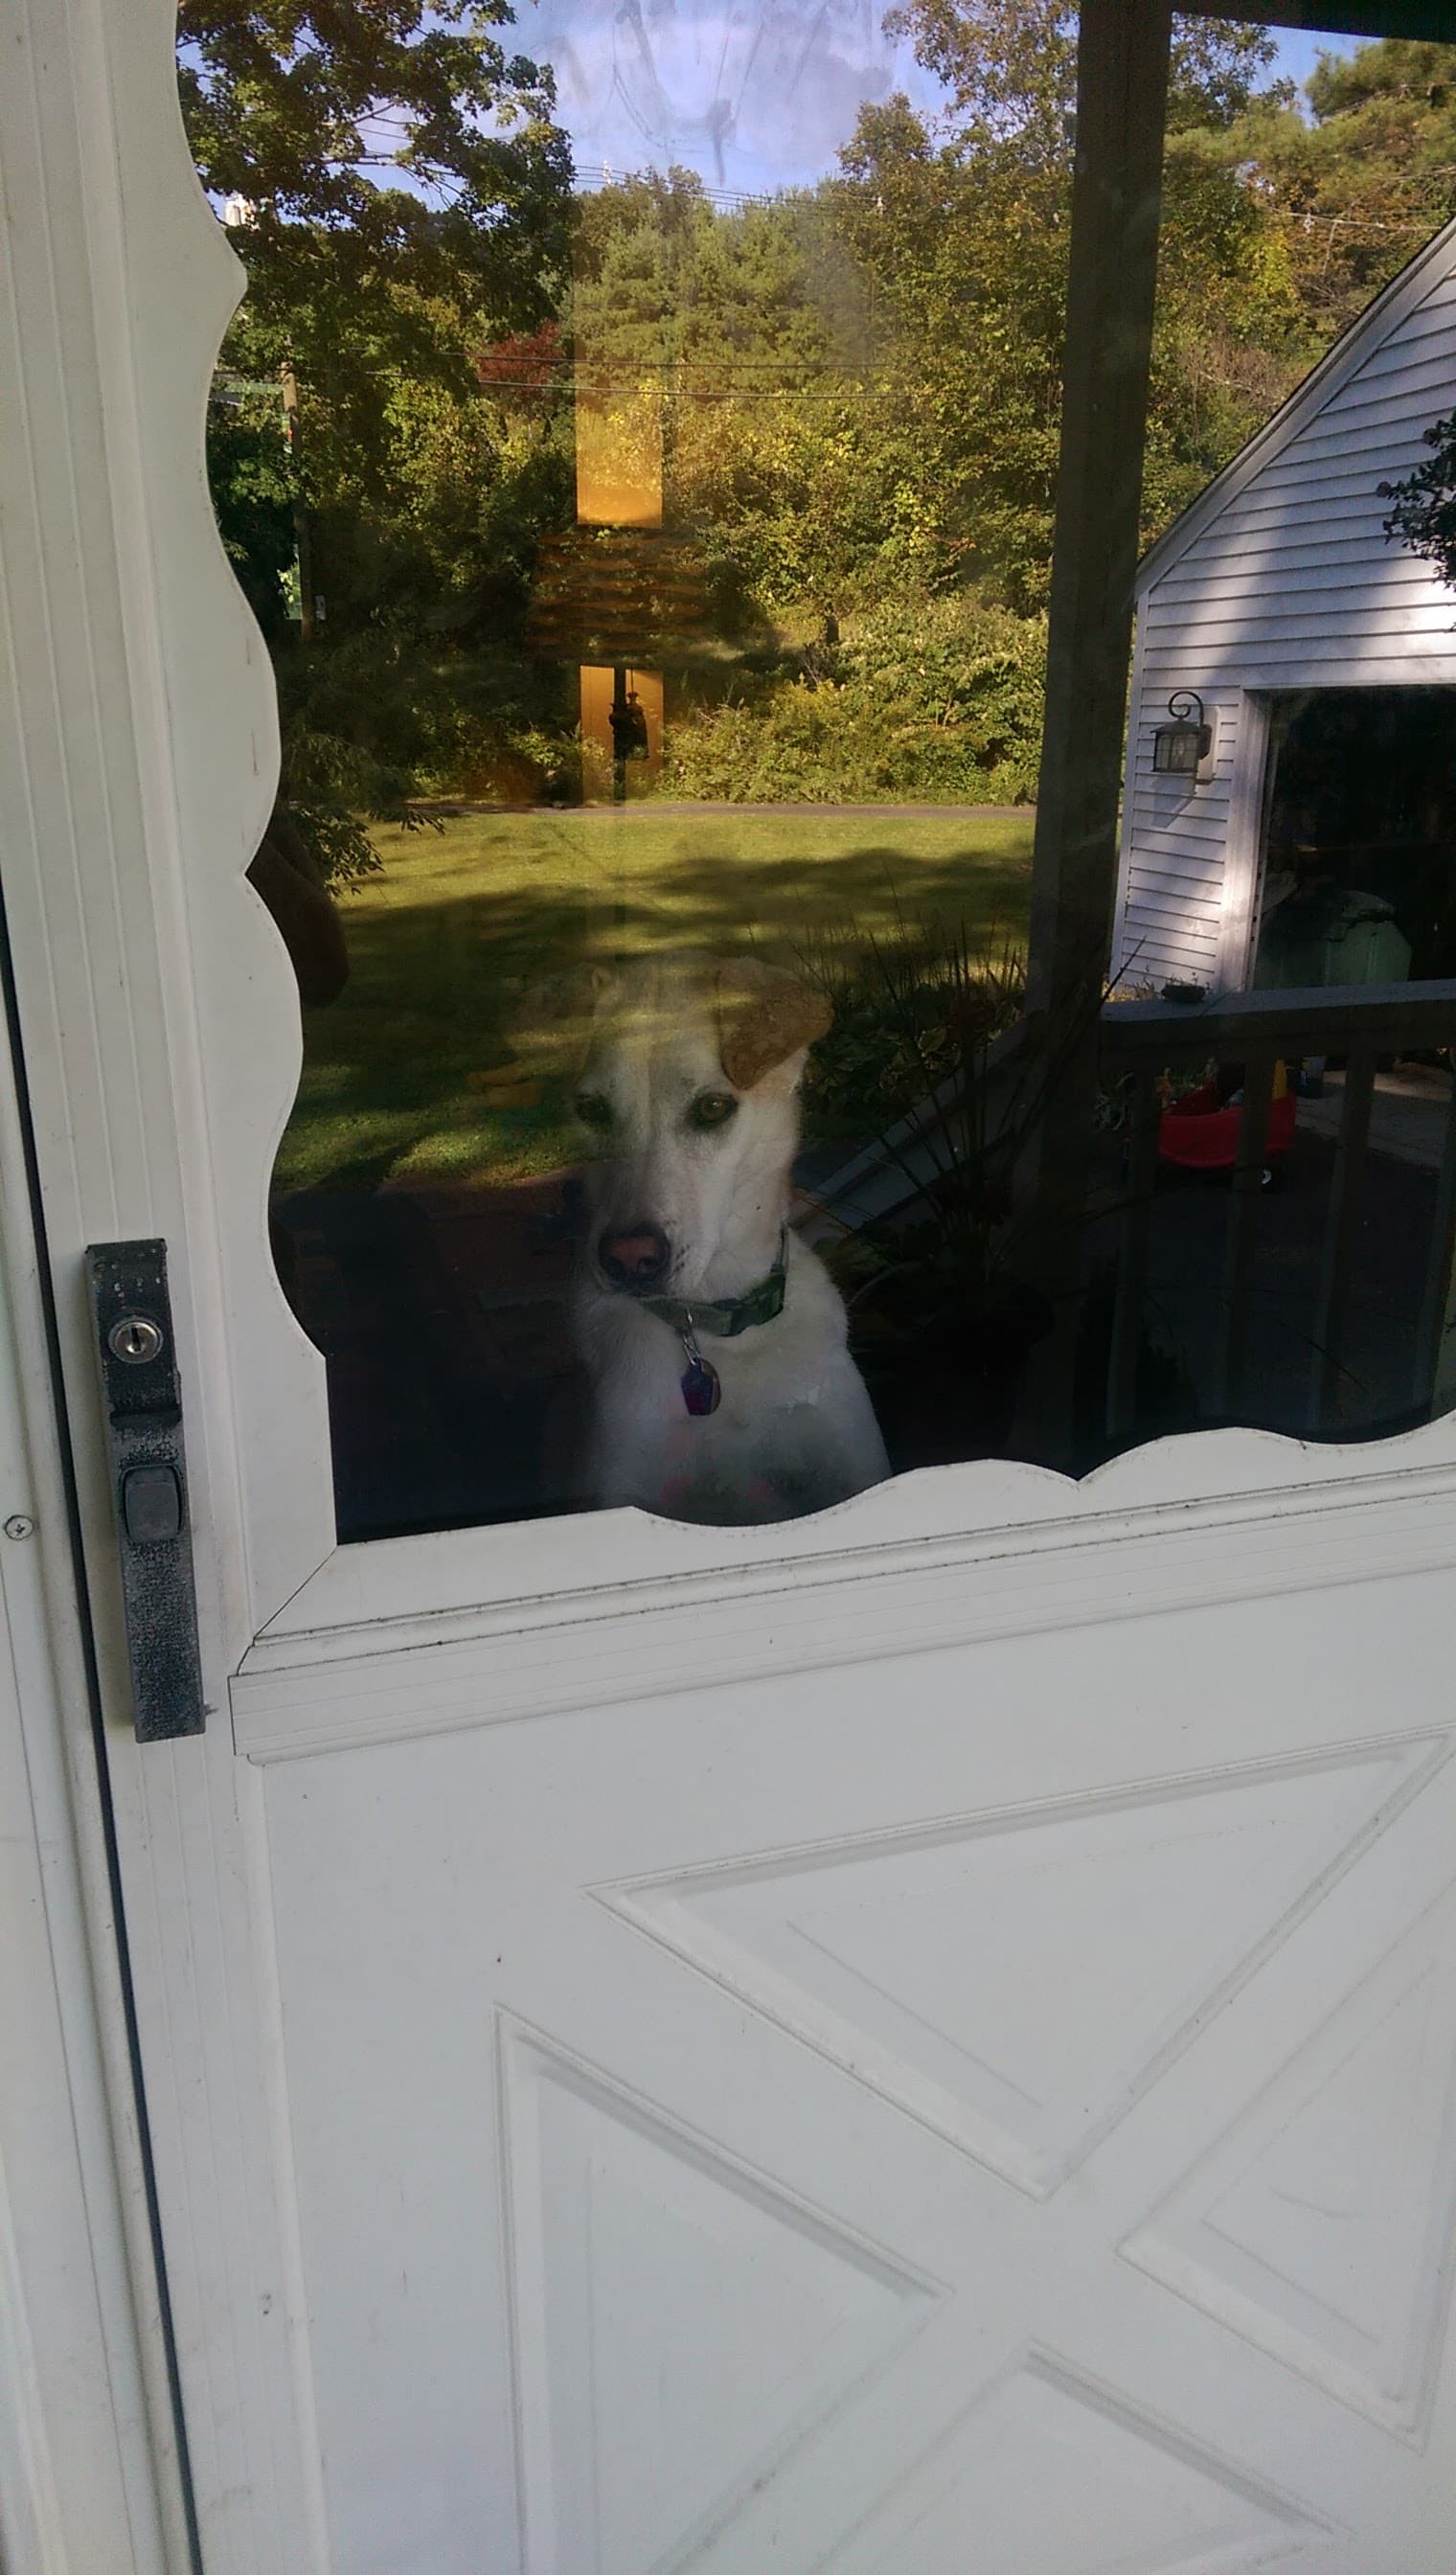 Dog in a storm door window.